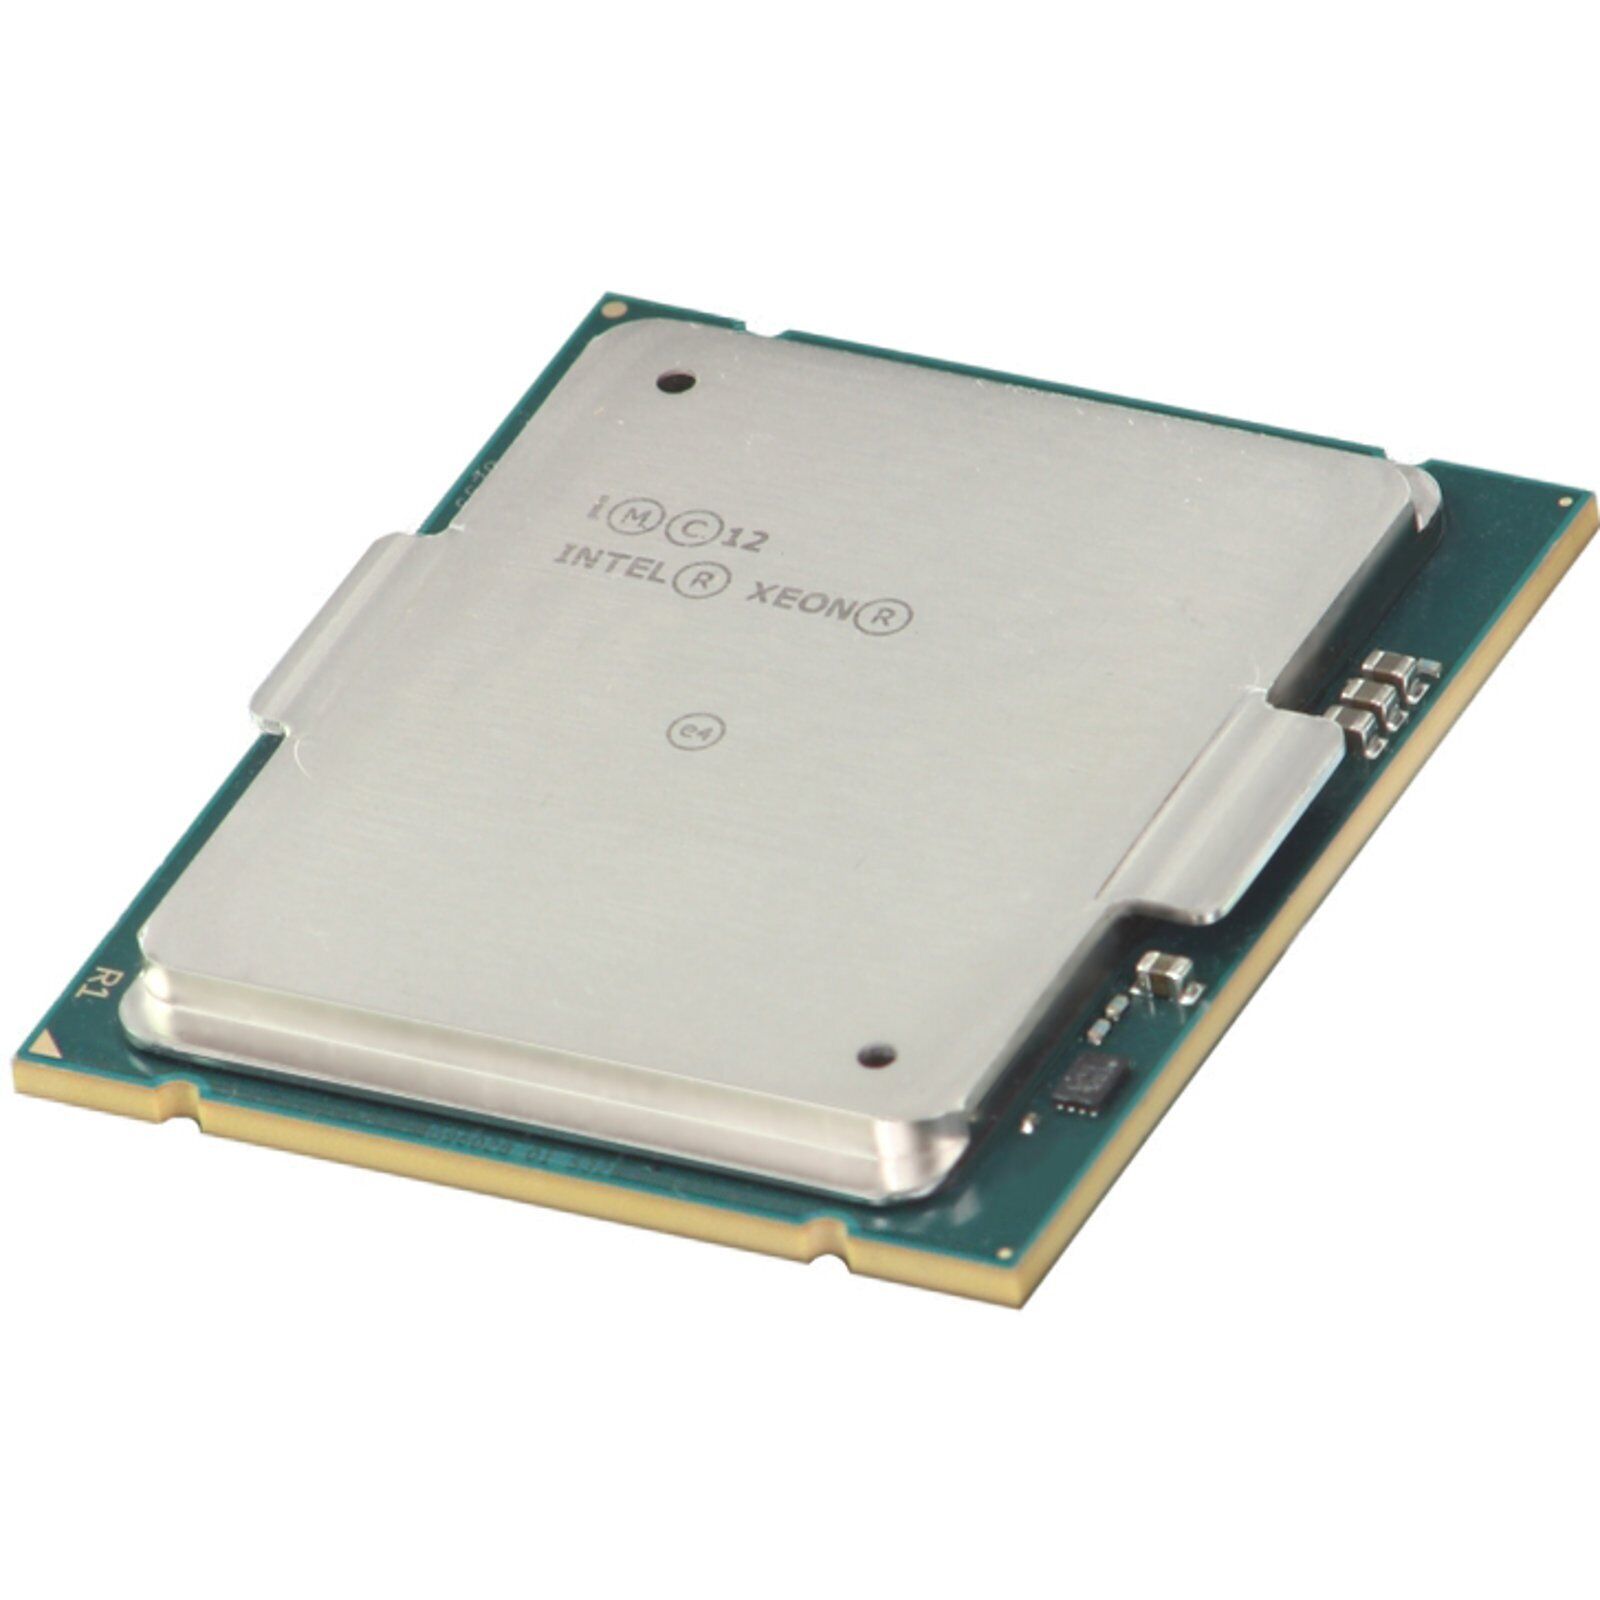 Intel Xeon E7-8880Lv2 2.2GHz/37.5M/1600MHz 15-Core 130W (SR1GS-OSTK)